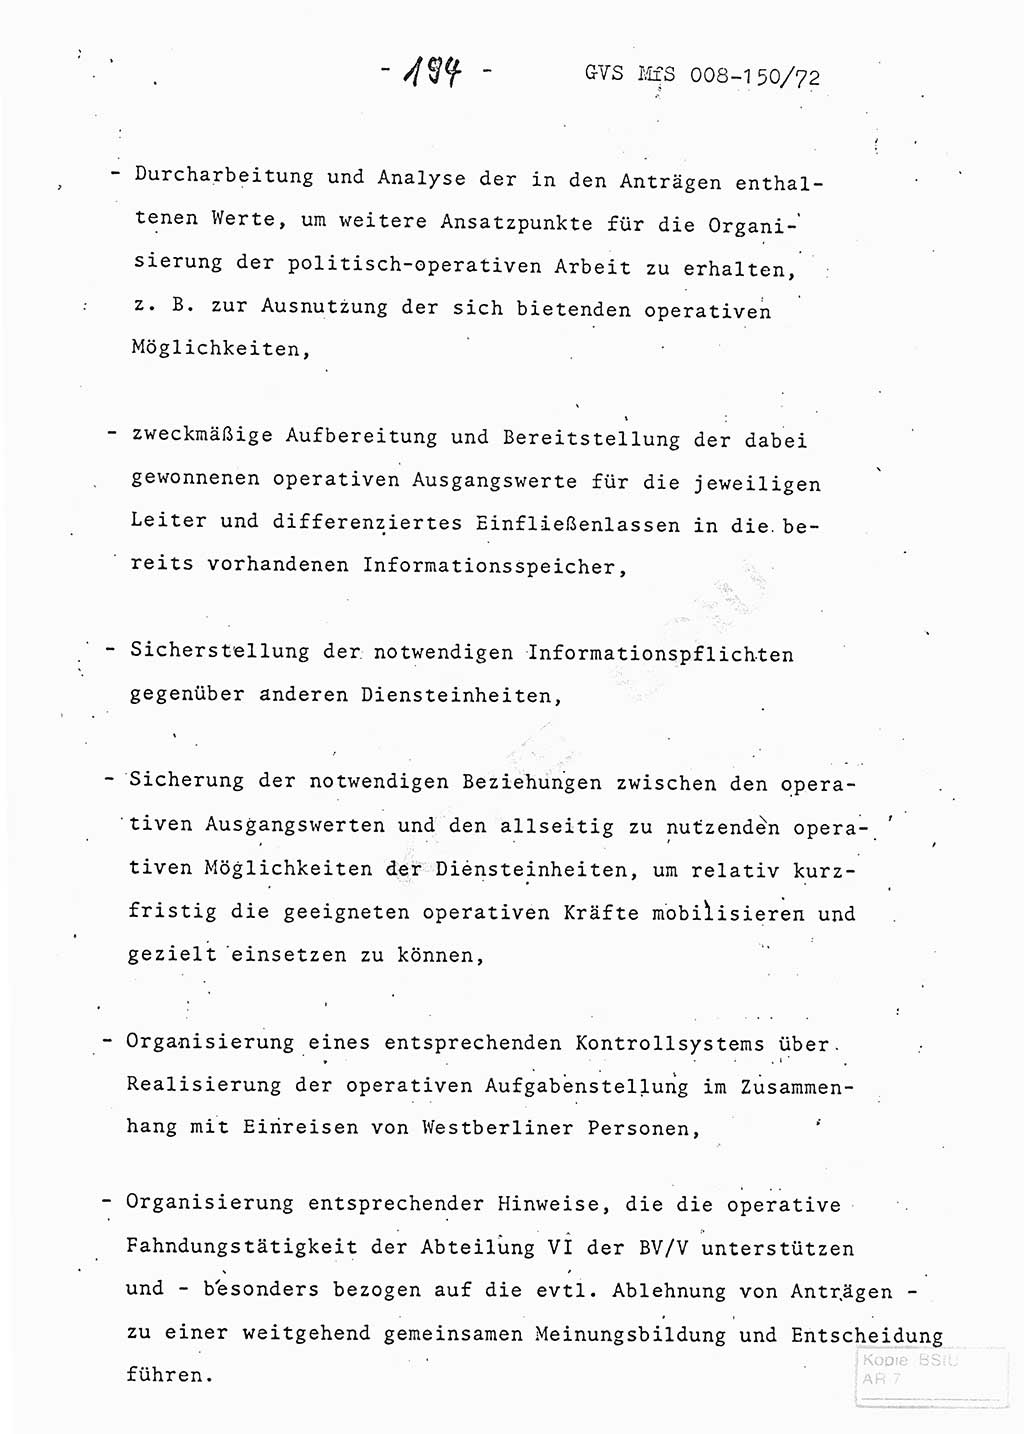 Referat (Entwurf) des Genossen Minister (Generaloberst Erich Mielke) auf der Dienstkonferenz 1972, Ministerium für Staatssicherheit (MfS) [Deutsche Demokratische Republik (DDR)], Der Minister, Geheime Verschlußsache (GVS) 008-150/72, Berlin 25.2.1972, Seite 194 (Ref. Entw. DK MfS DDR Min. GVS 008-150/72 1972, S. 194)